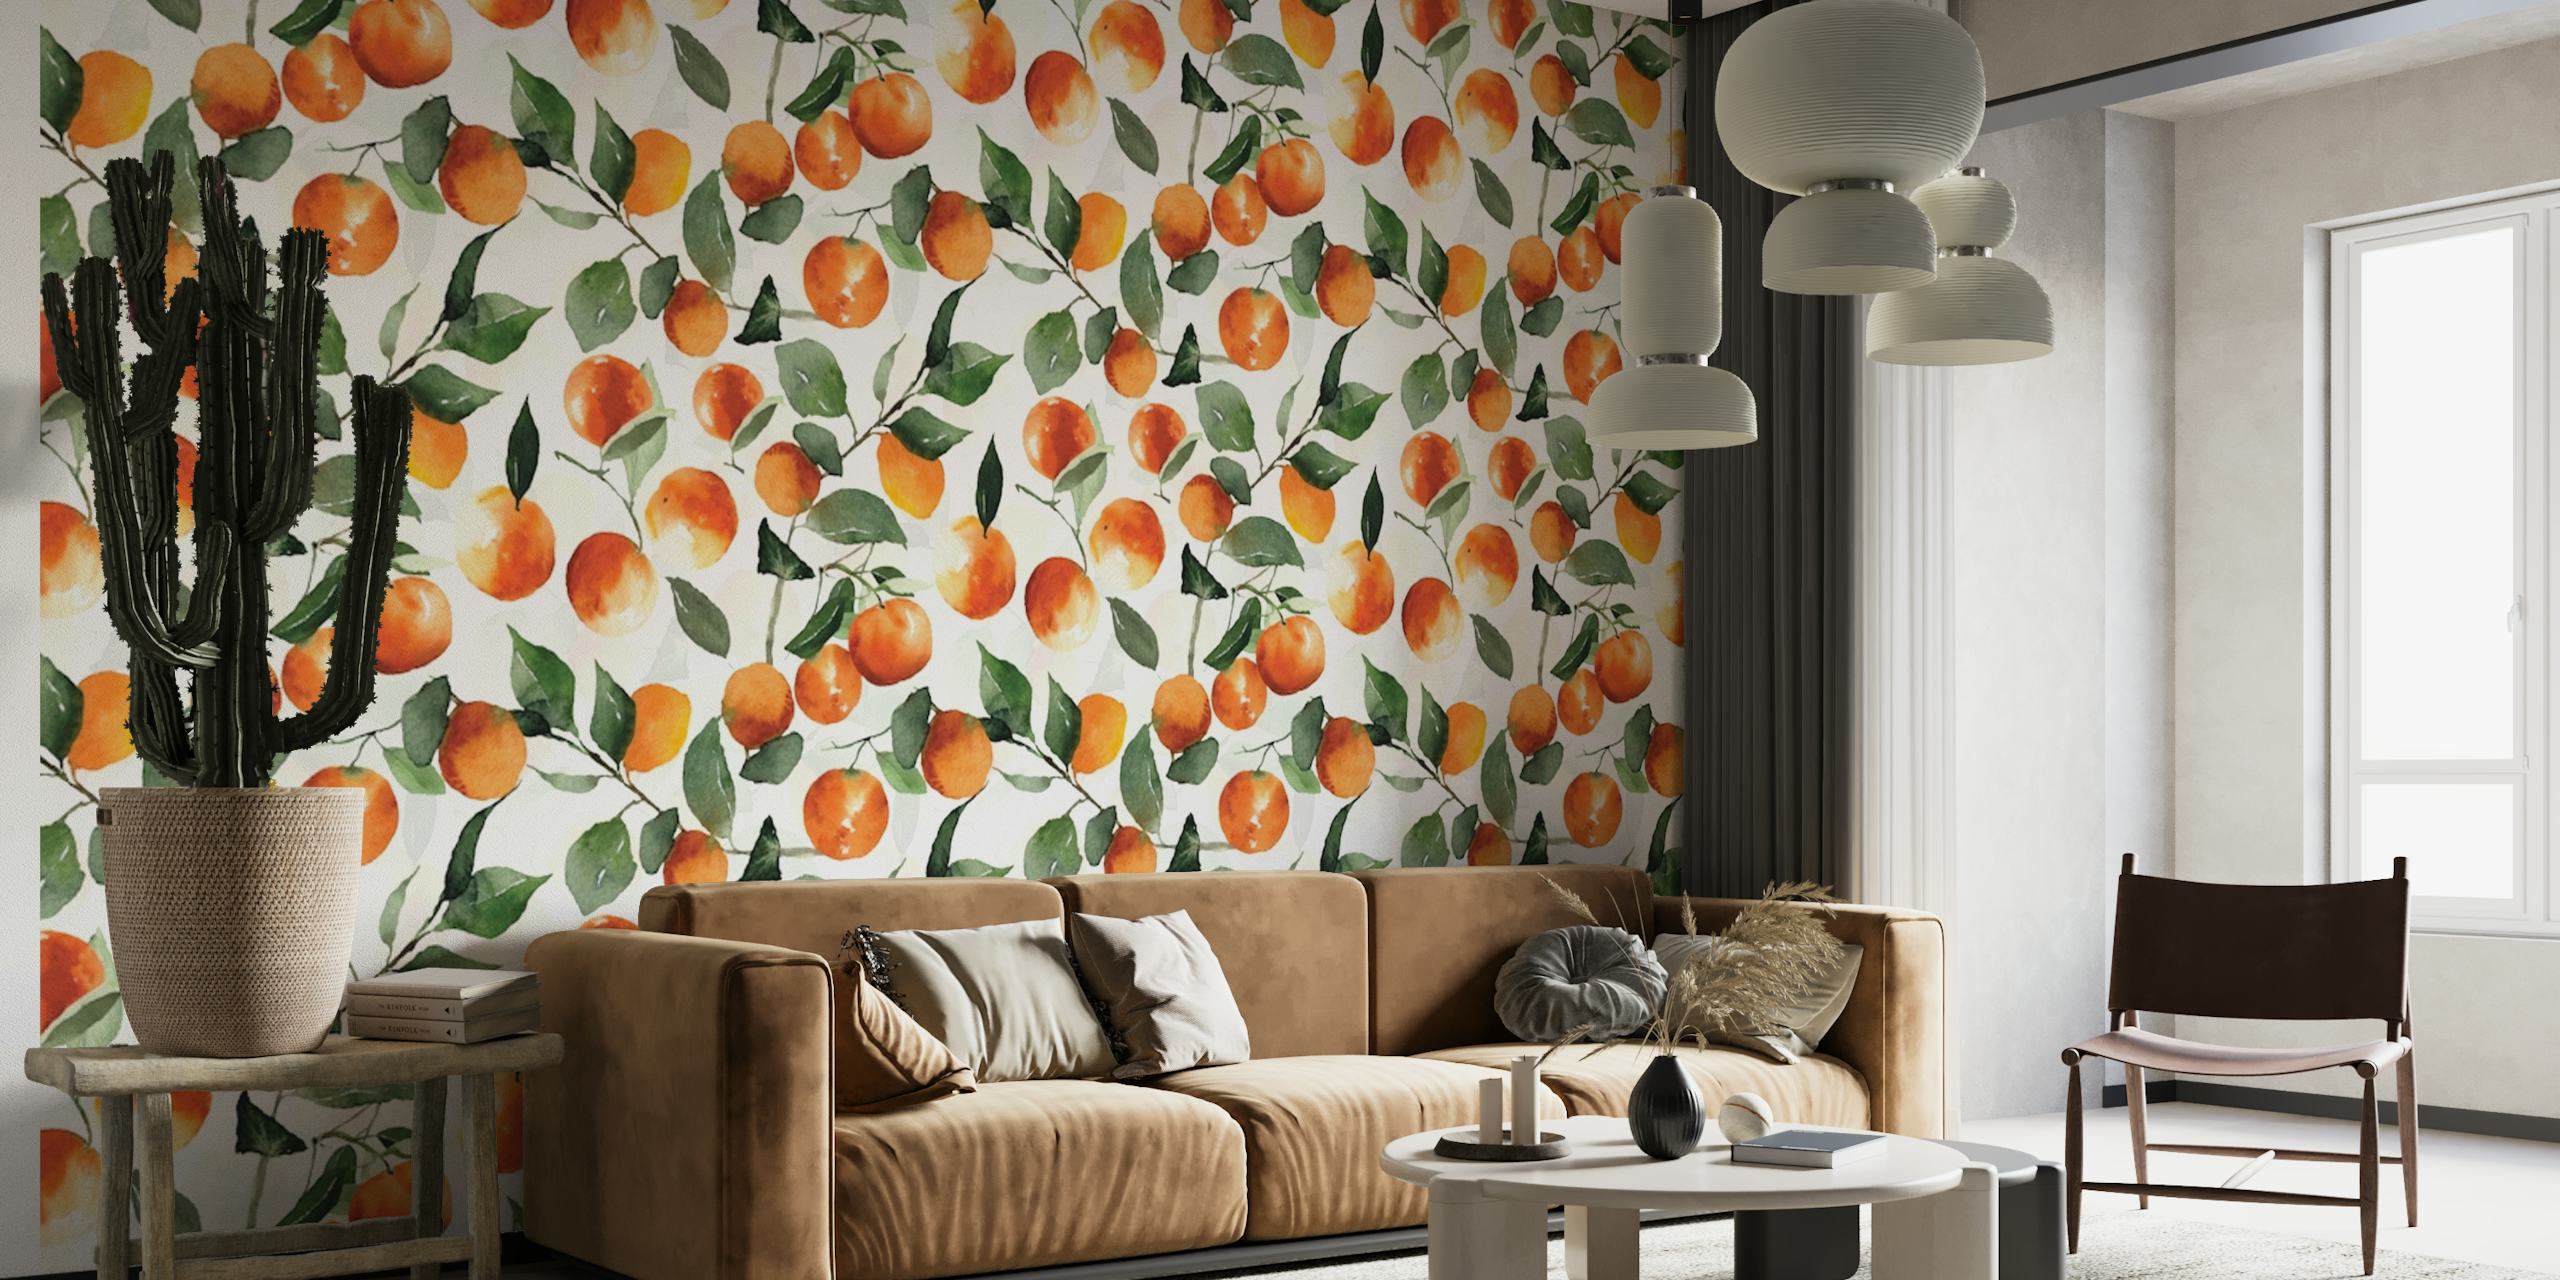 Zidna slika s uzorkom naranči i lišća